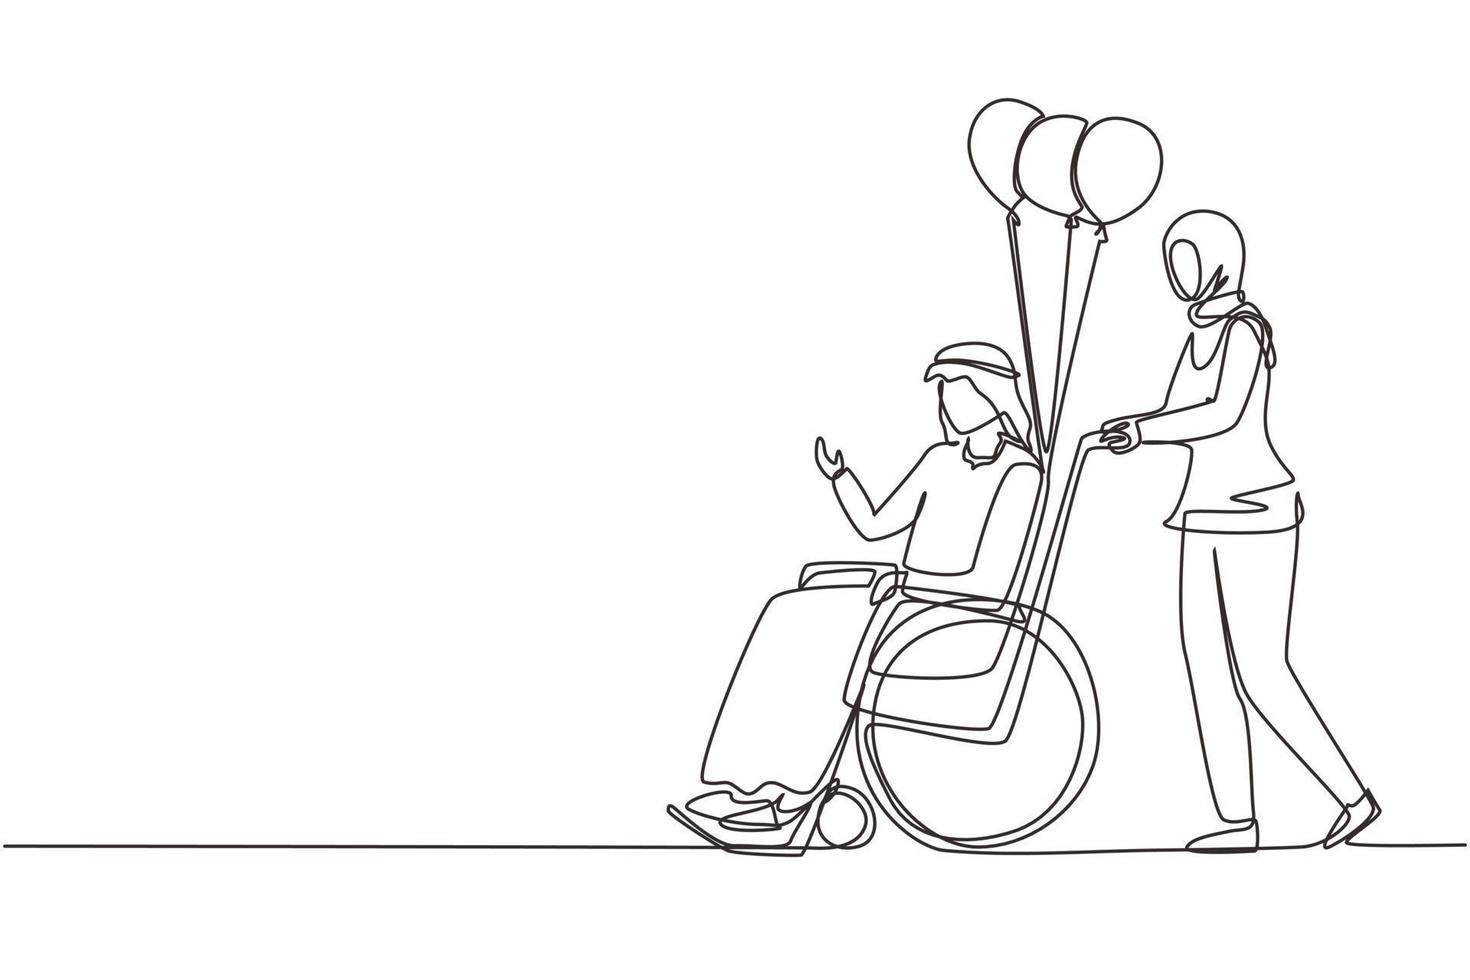 dessin continu d'une ligne concept de personnes handicapées. une femme arabe porte un homme handicapé en fauteuil roulant. accessibilité, réadaptation personne invalide, personnes activités. vecteur de conception de dessin à une seule ligne